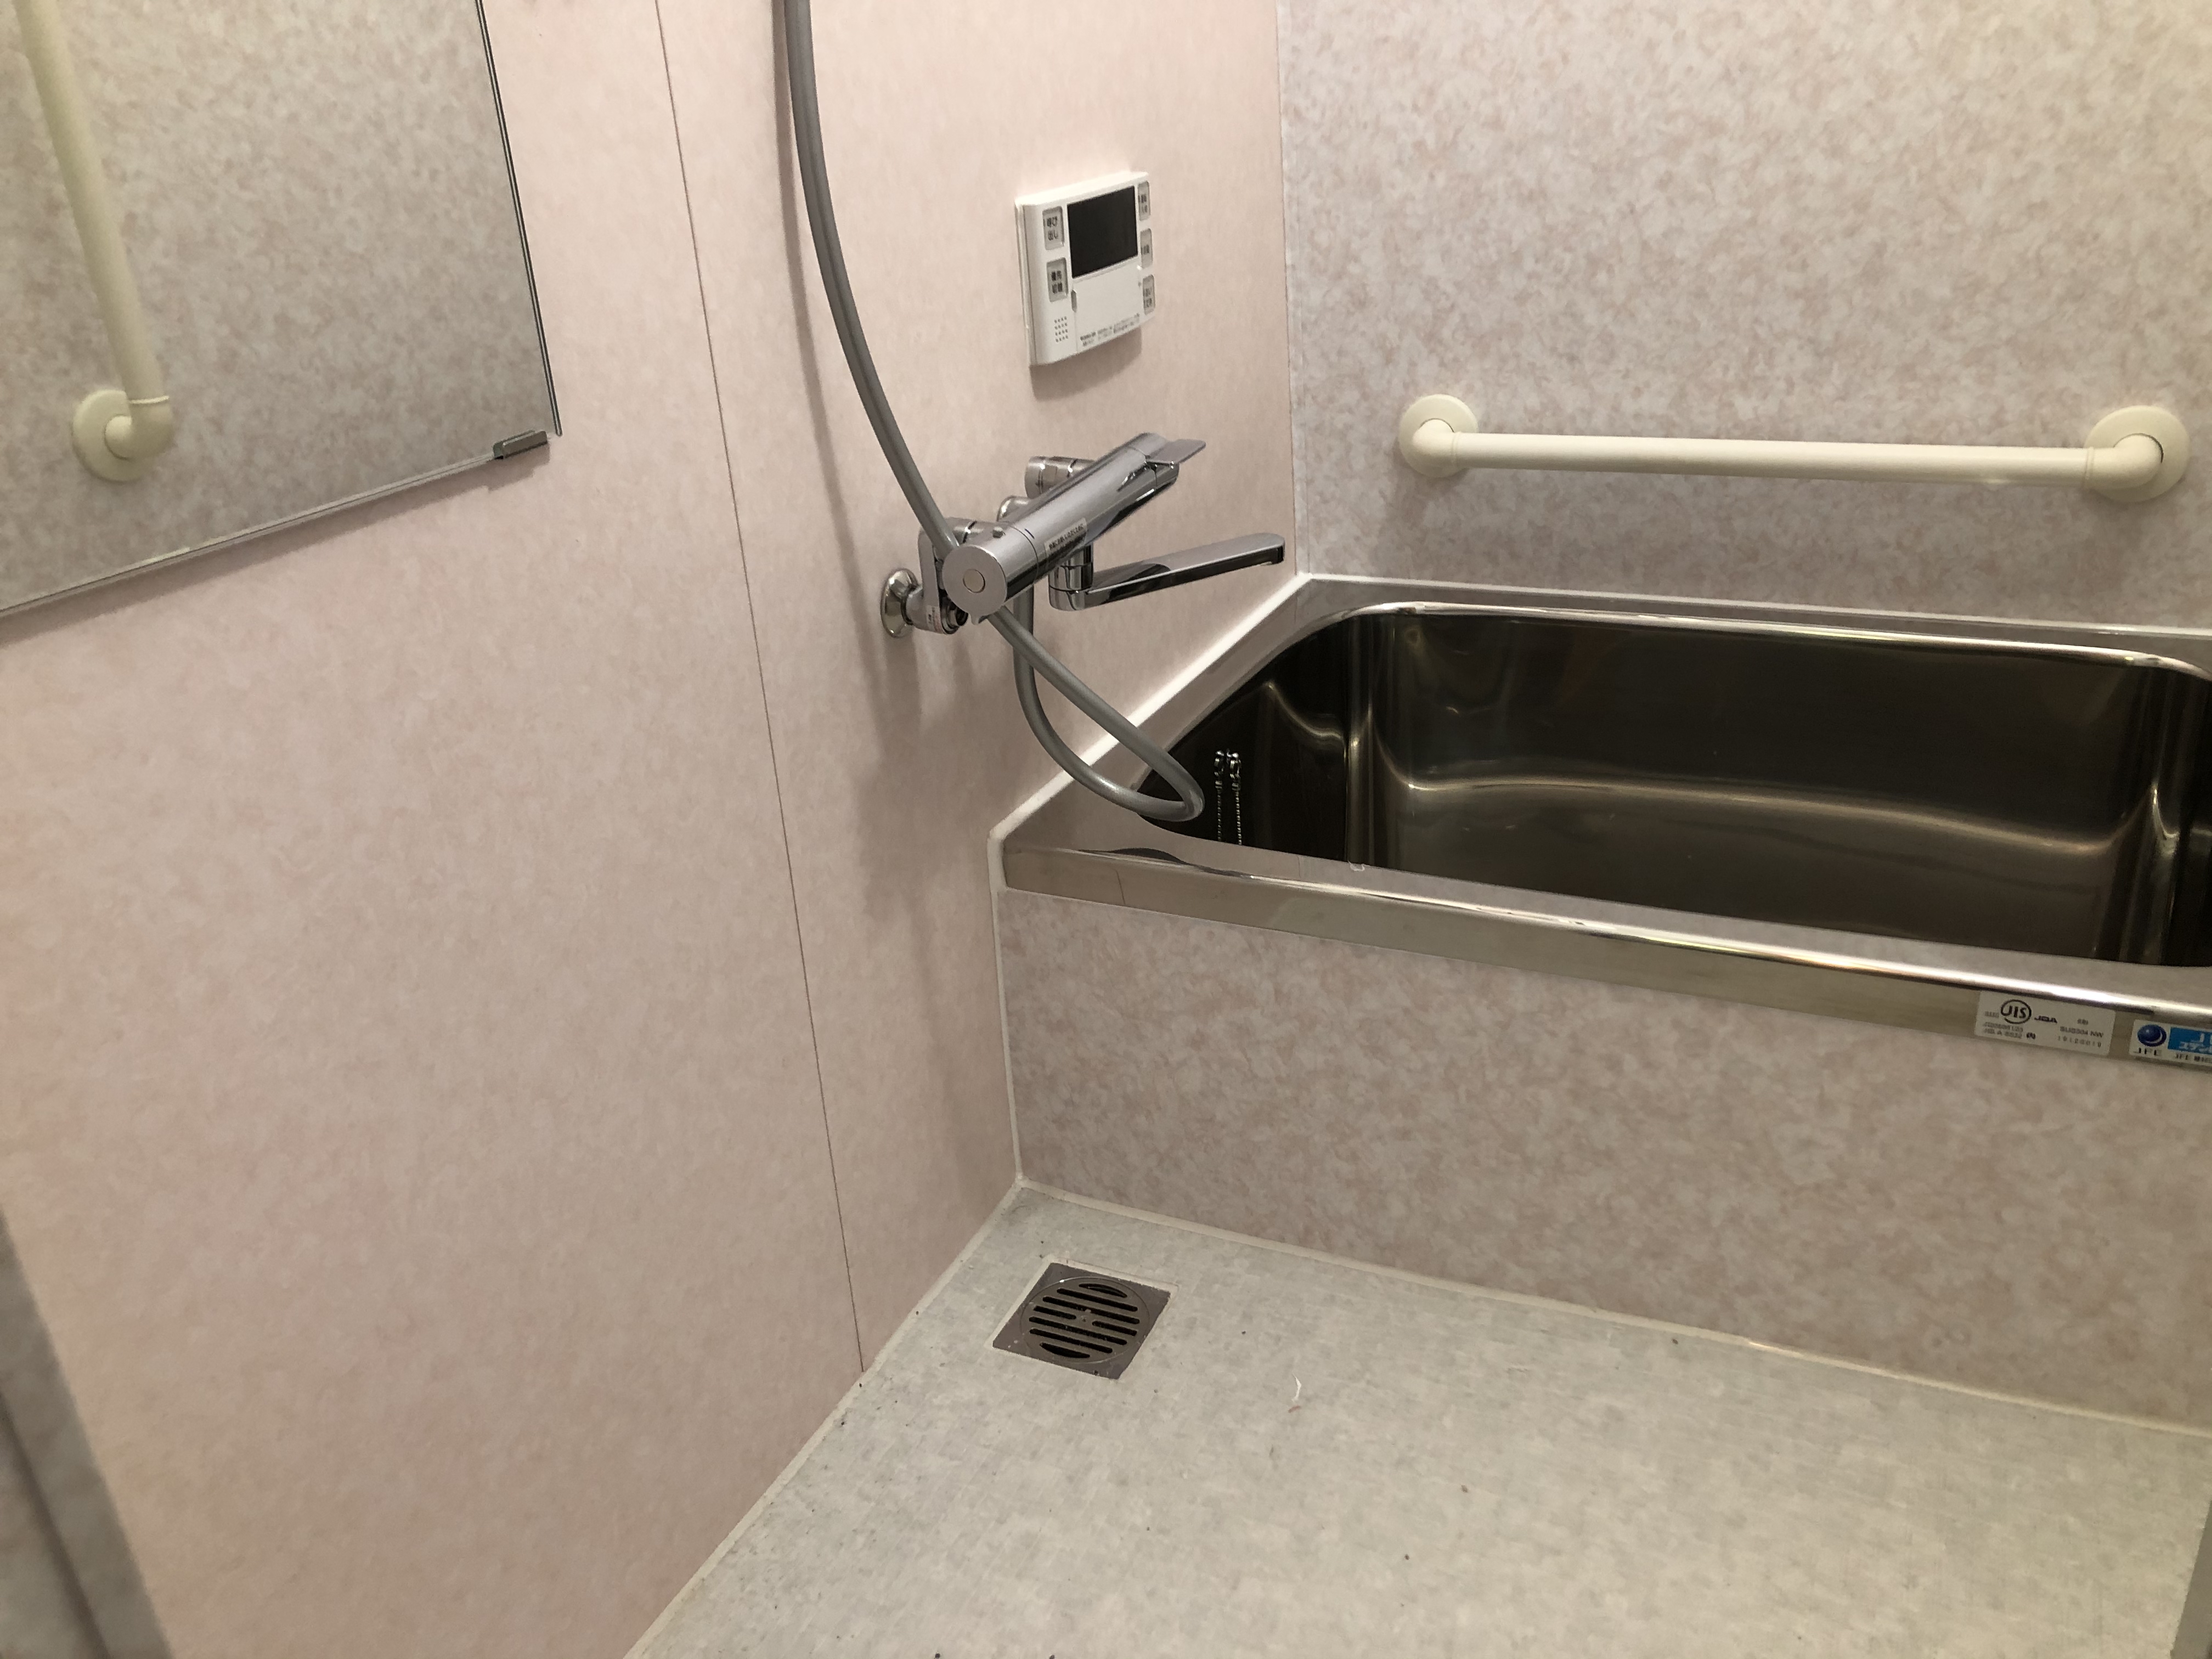 大阪市東住吉区　戸建て住宅の浴室リフォーム工事　在来風呂にパネル工法で新品みたいになりました